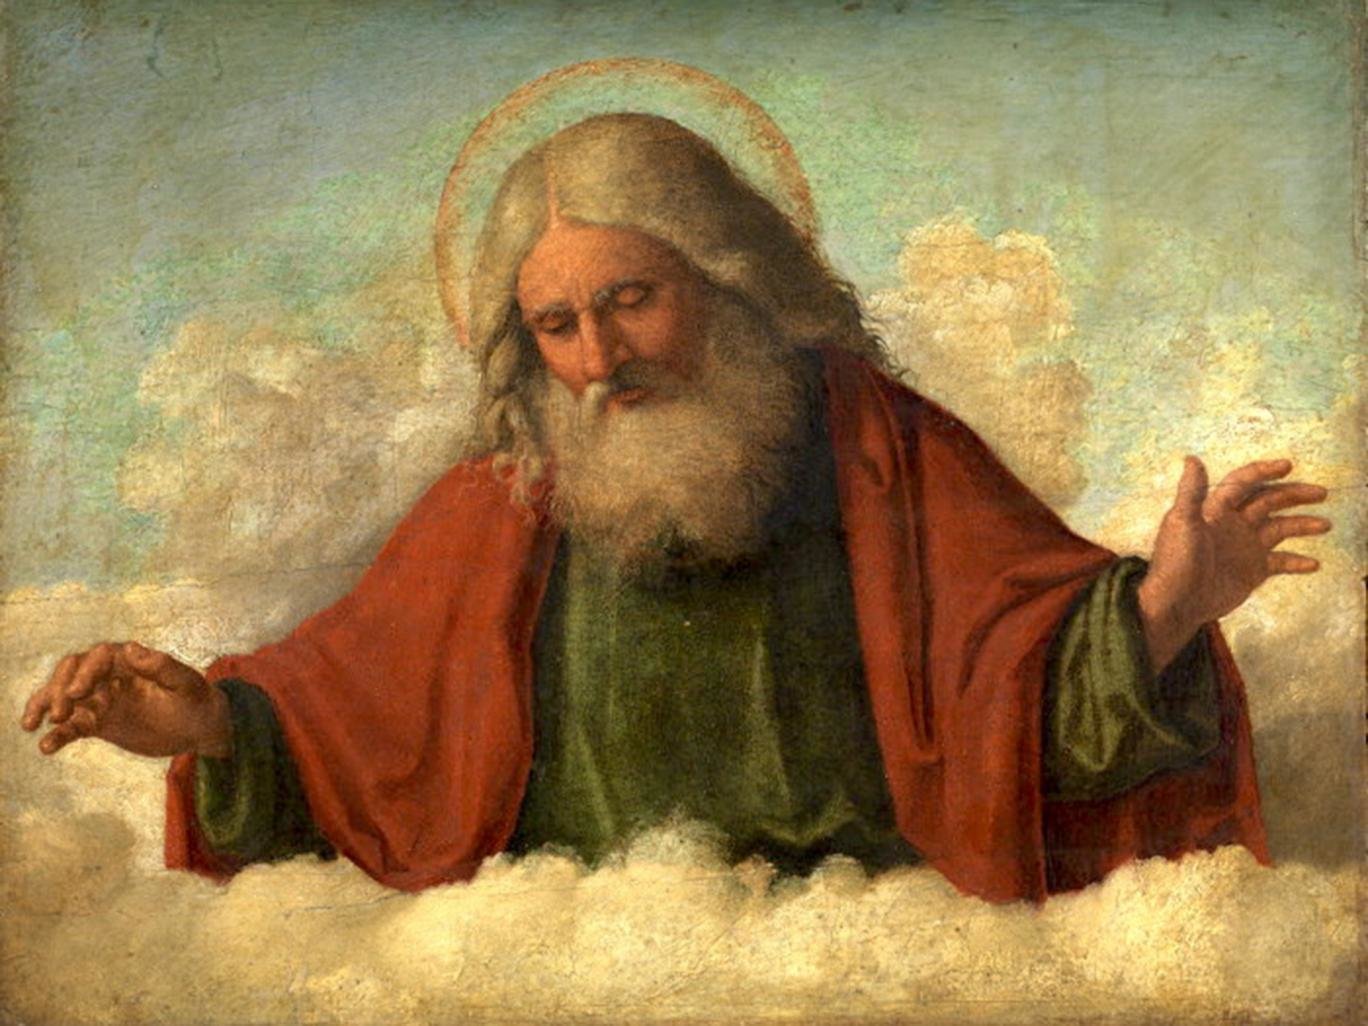 God in clouds